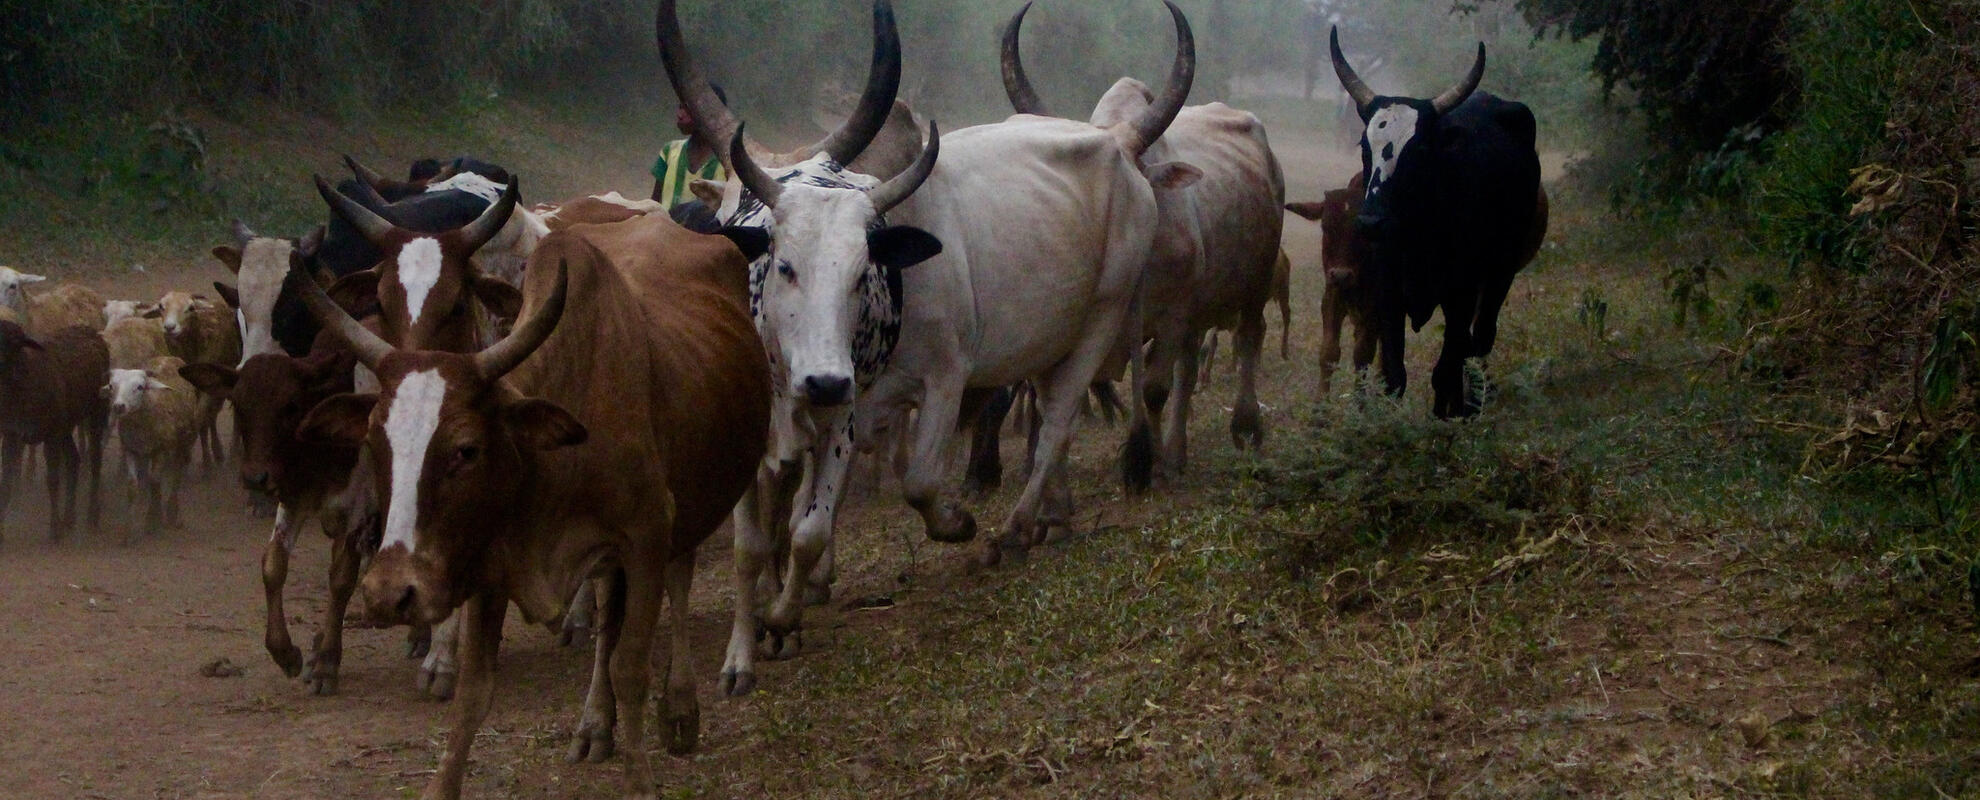 Herd of cows (ILRI/ Camille Hanotte)